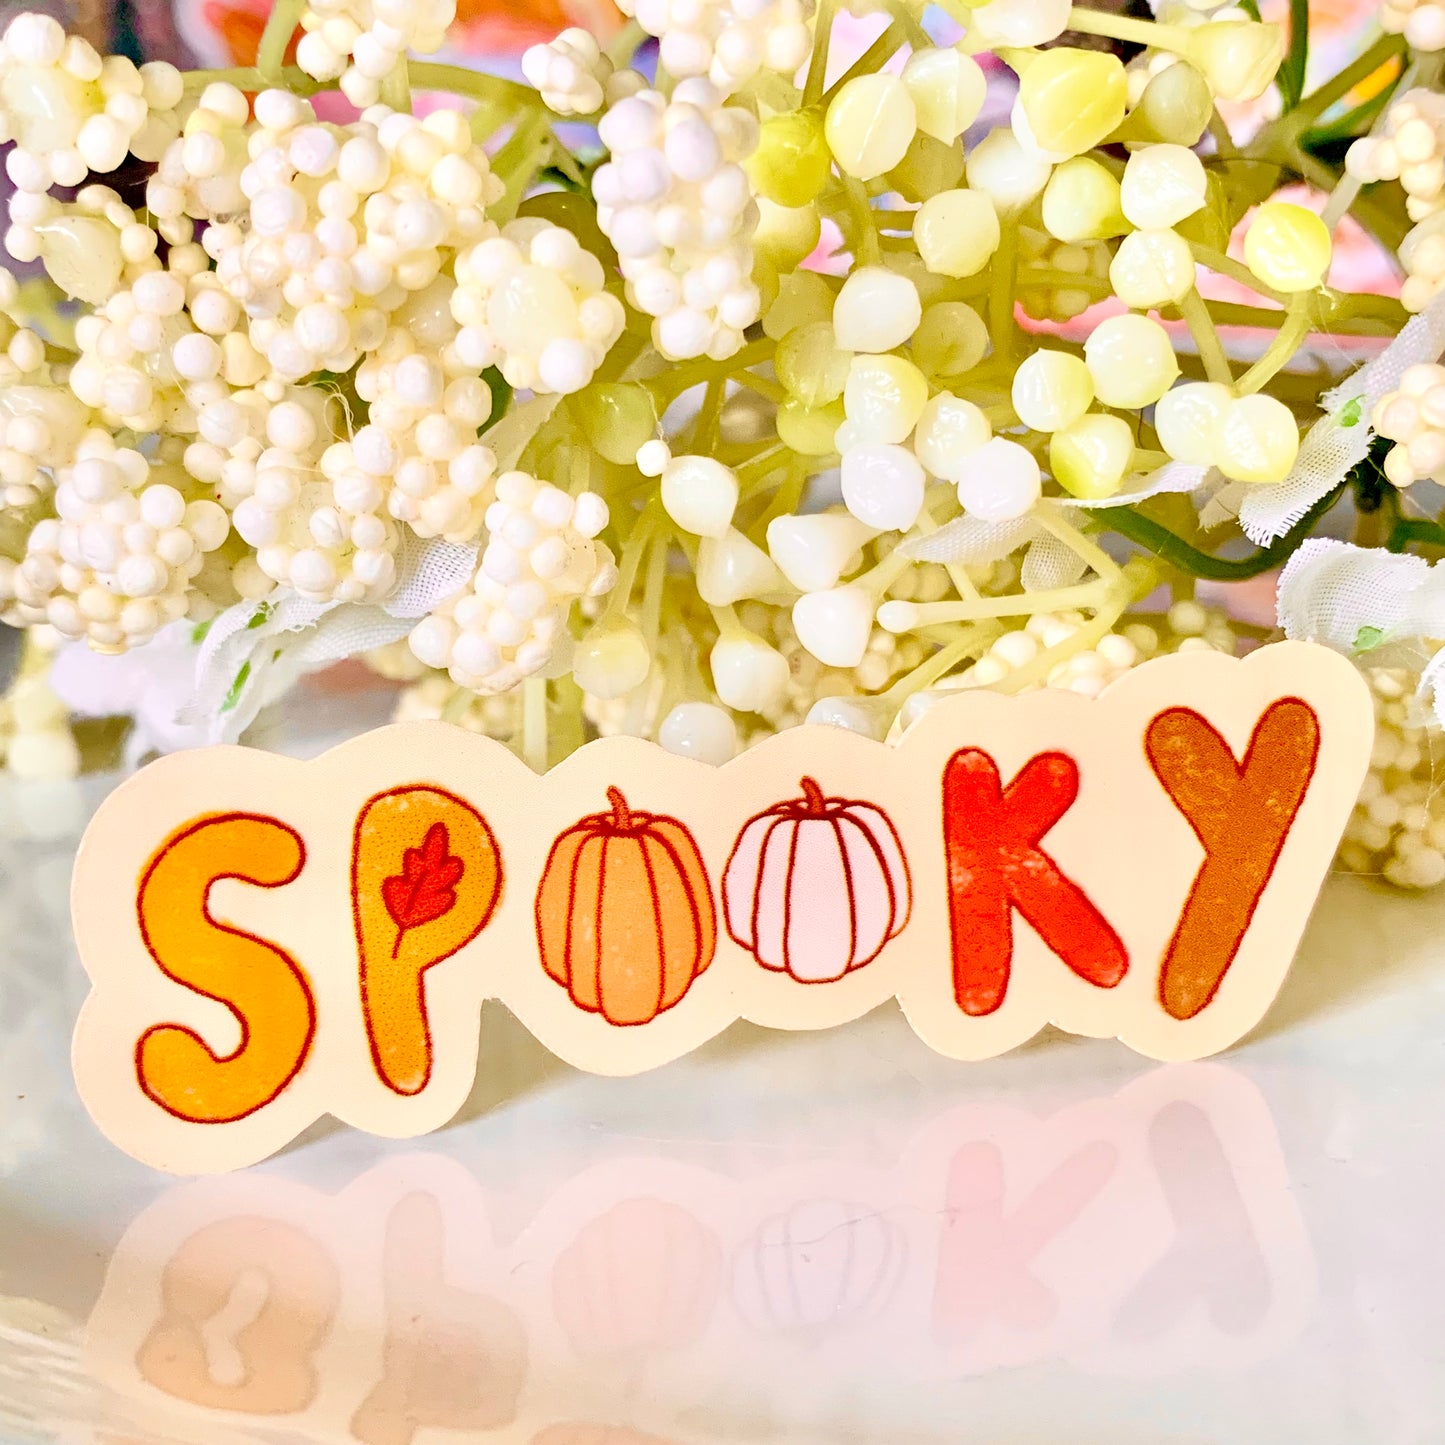 Spooky Pumpkin Sticker